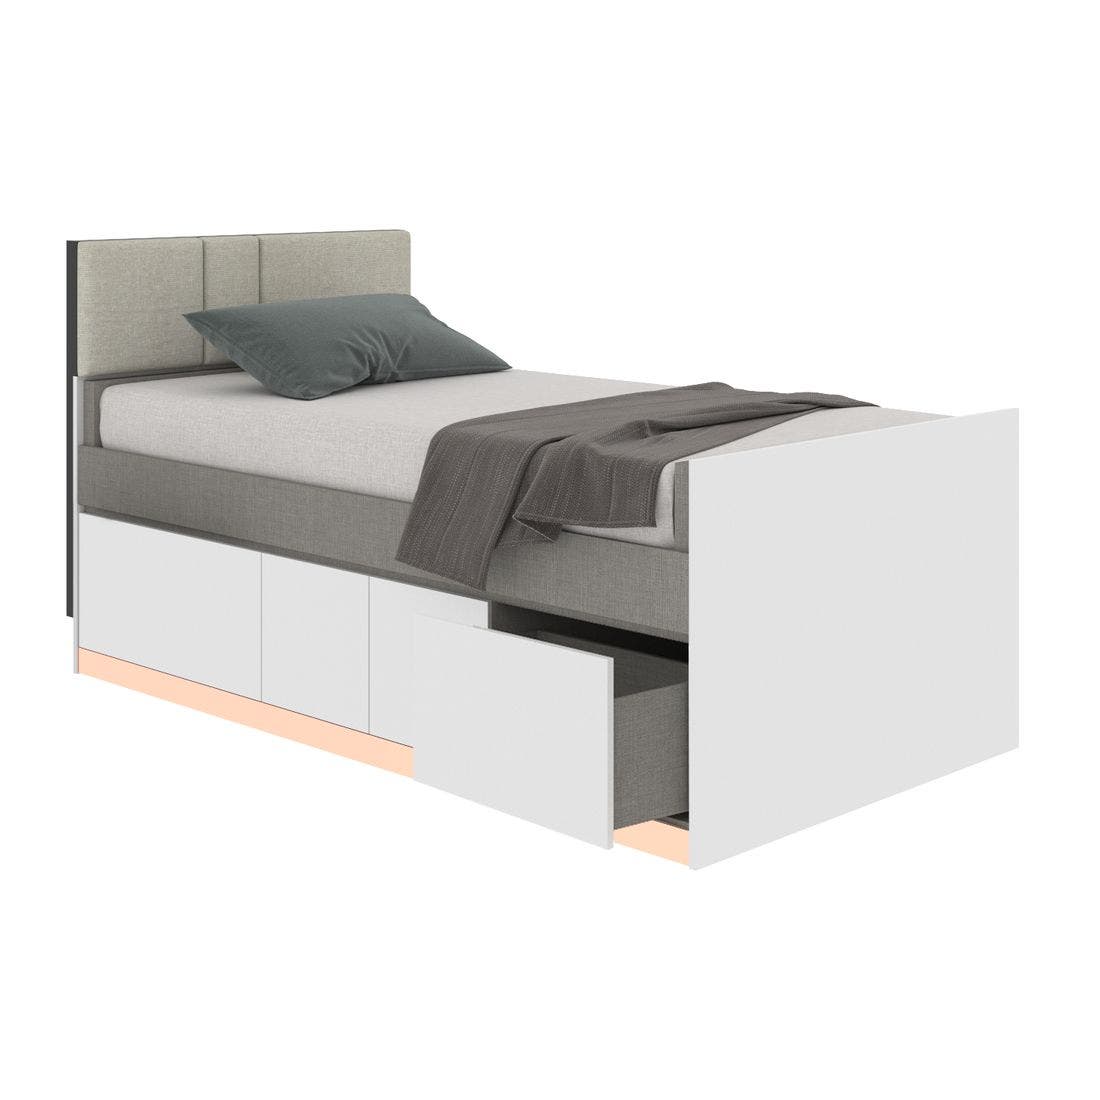 19203762-blisz-furniture-bedroom-furniture-beds-06